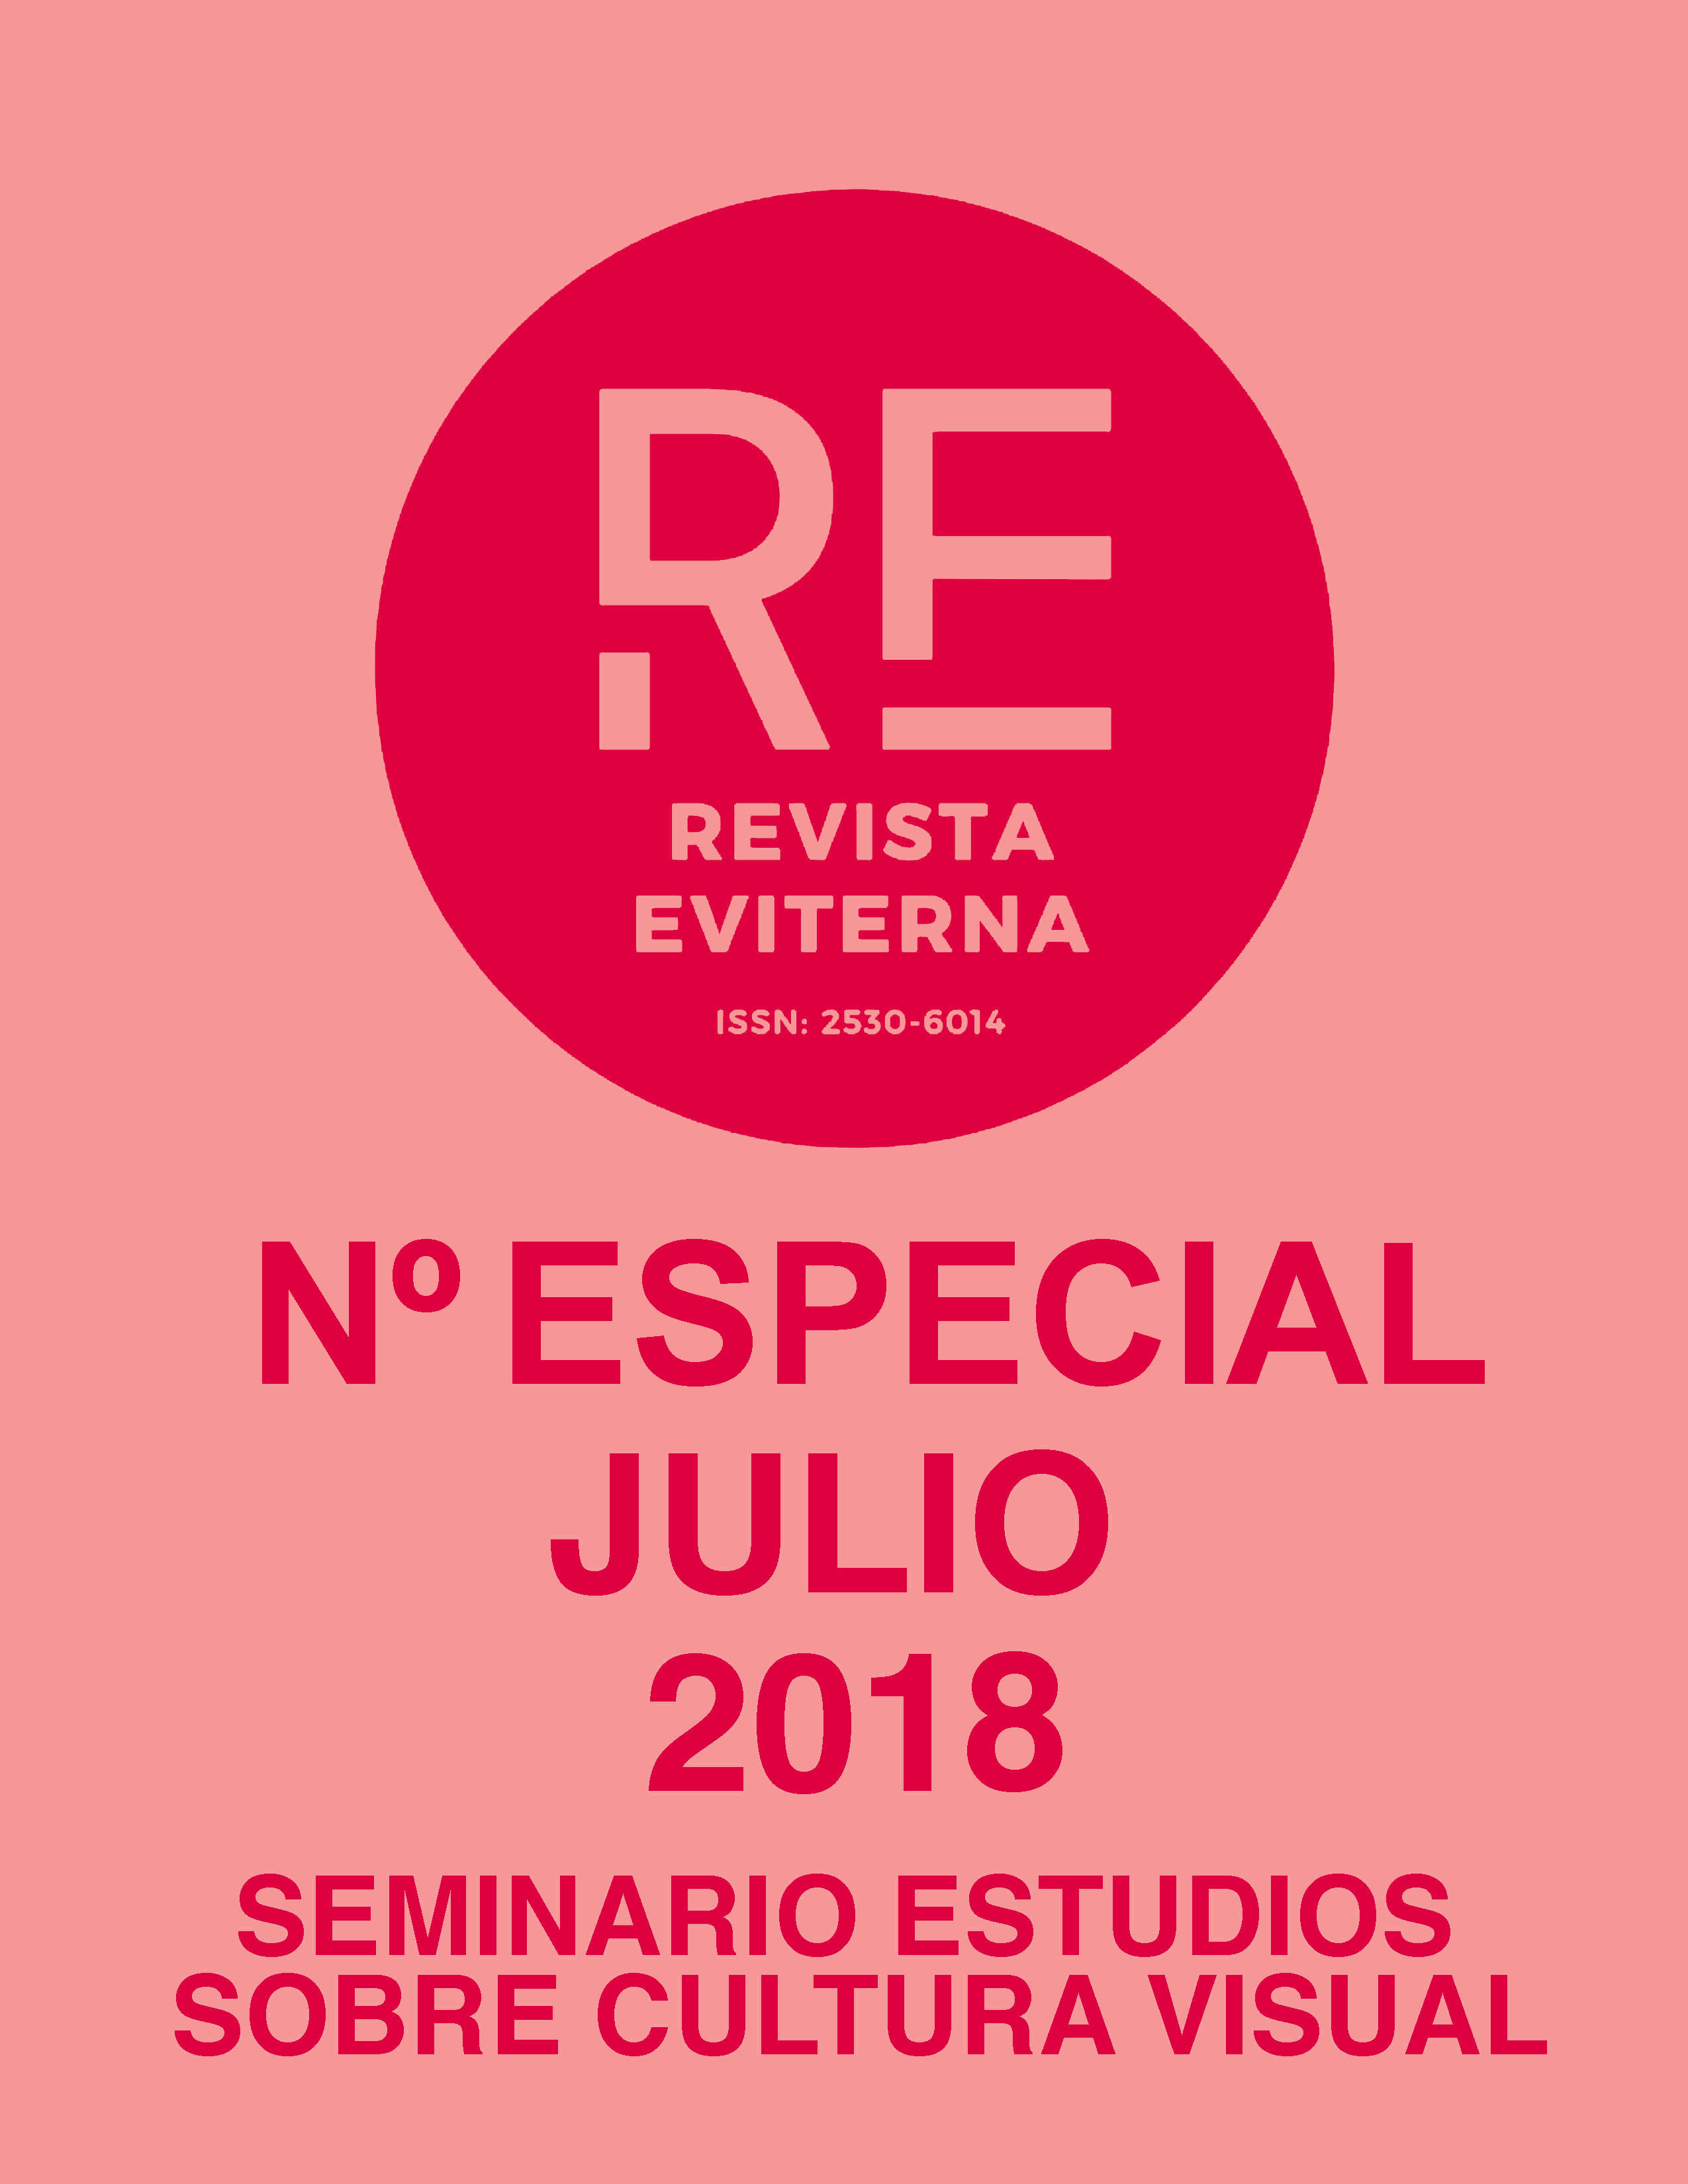 					View No. Especial 3 (2018): Revista Eviterna Nº Especial 3, julio 2018
				